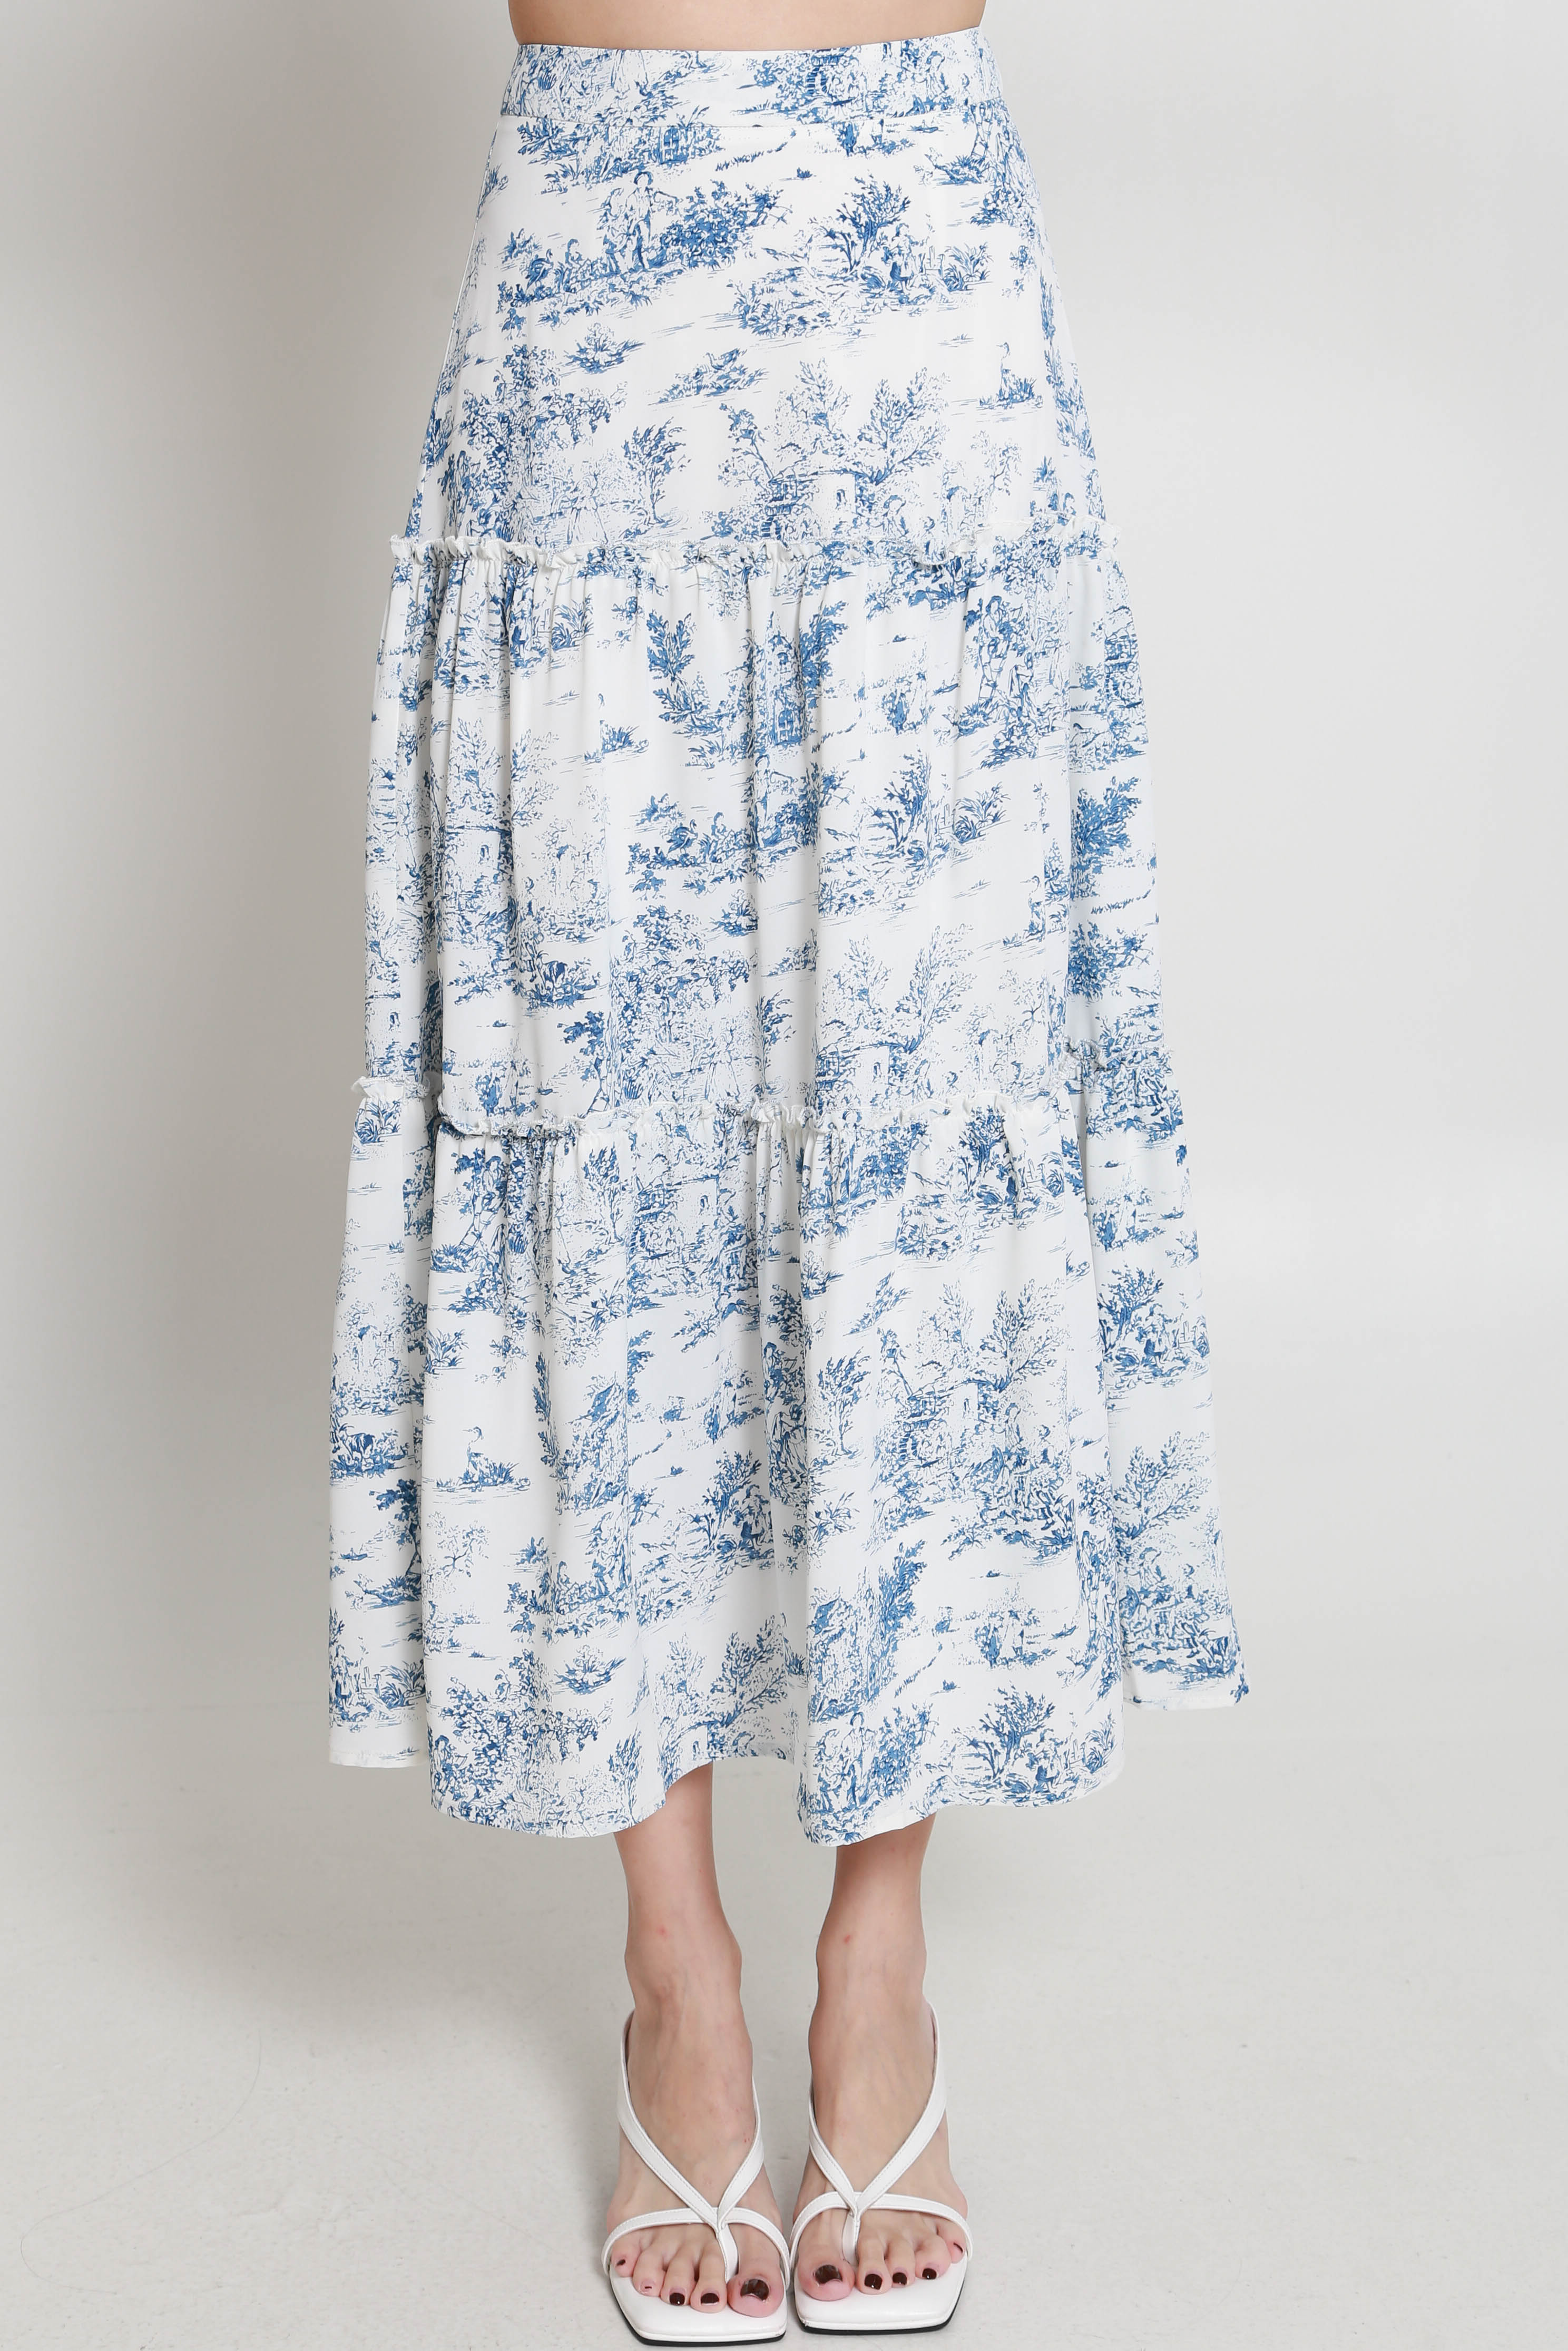 Estelle Floral Layered Skirt (Light Blue) | Carrislabelle